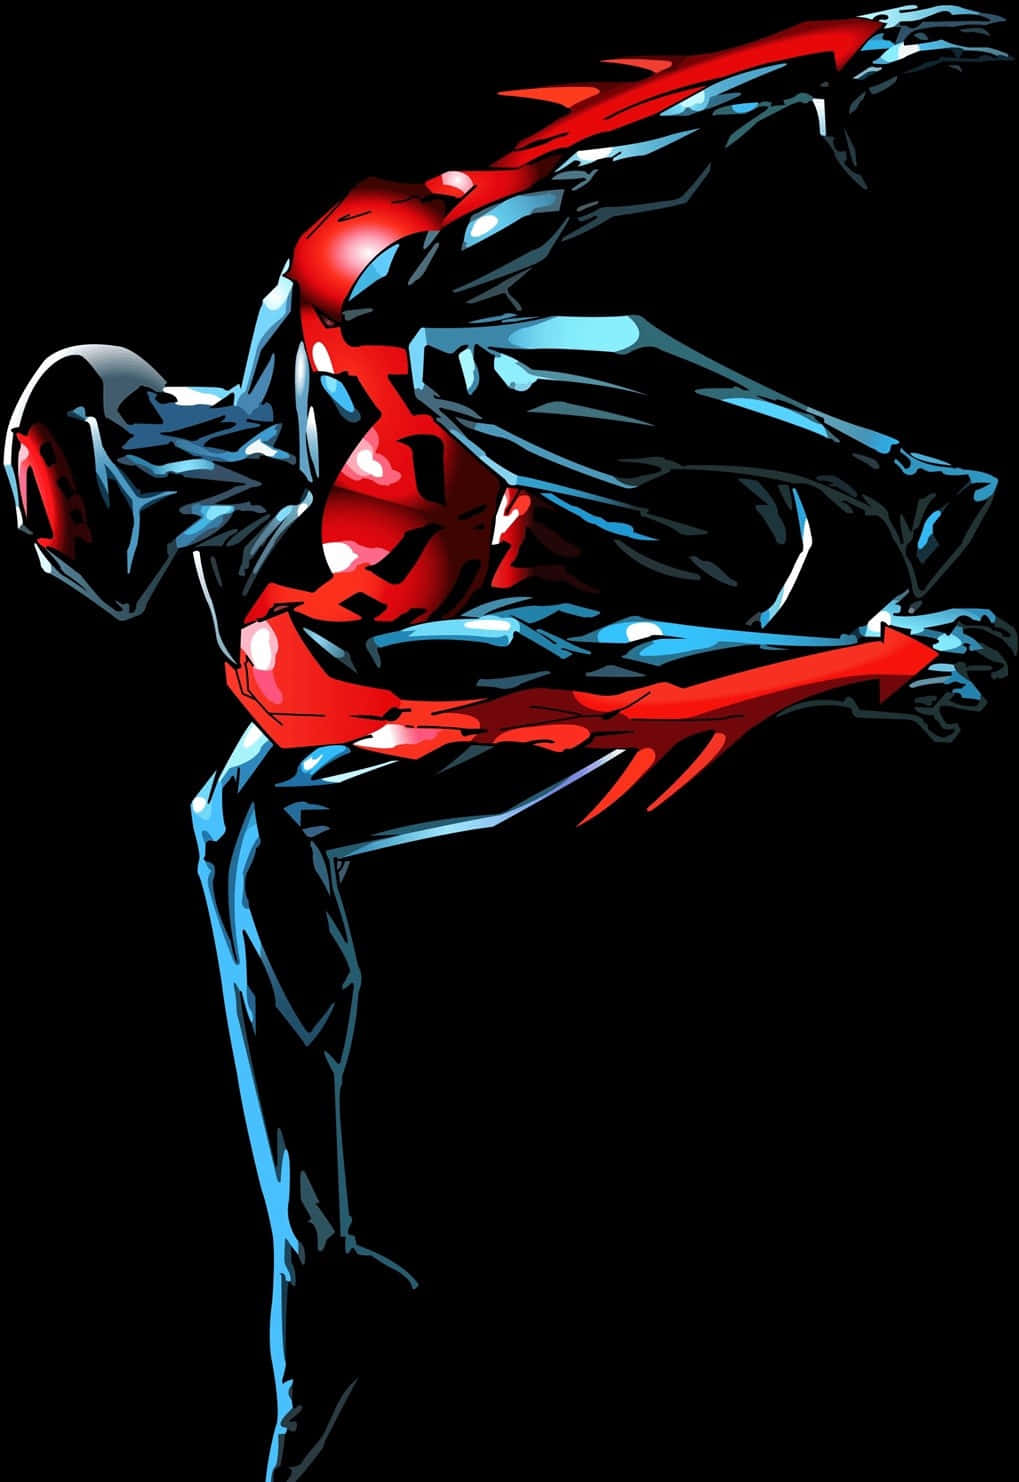 Spider-Man 2099 Swinging through the Futuristic Cityscape Wallpaper